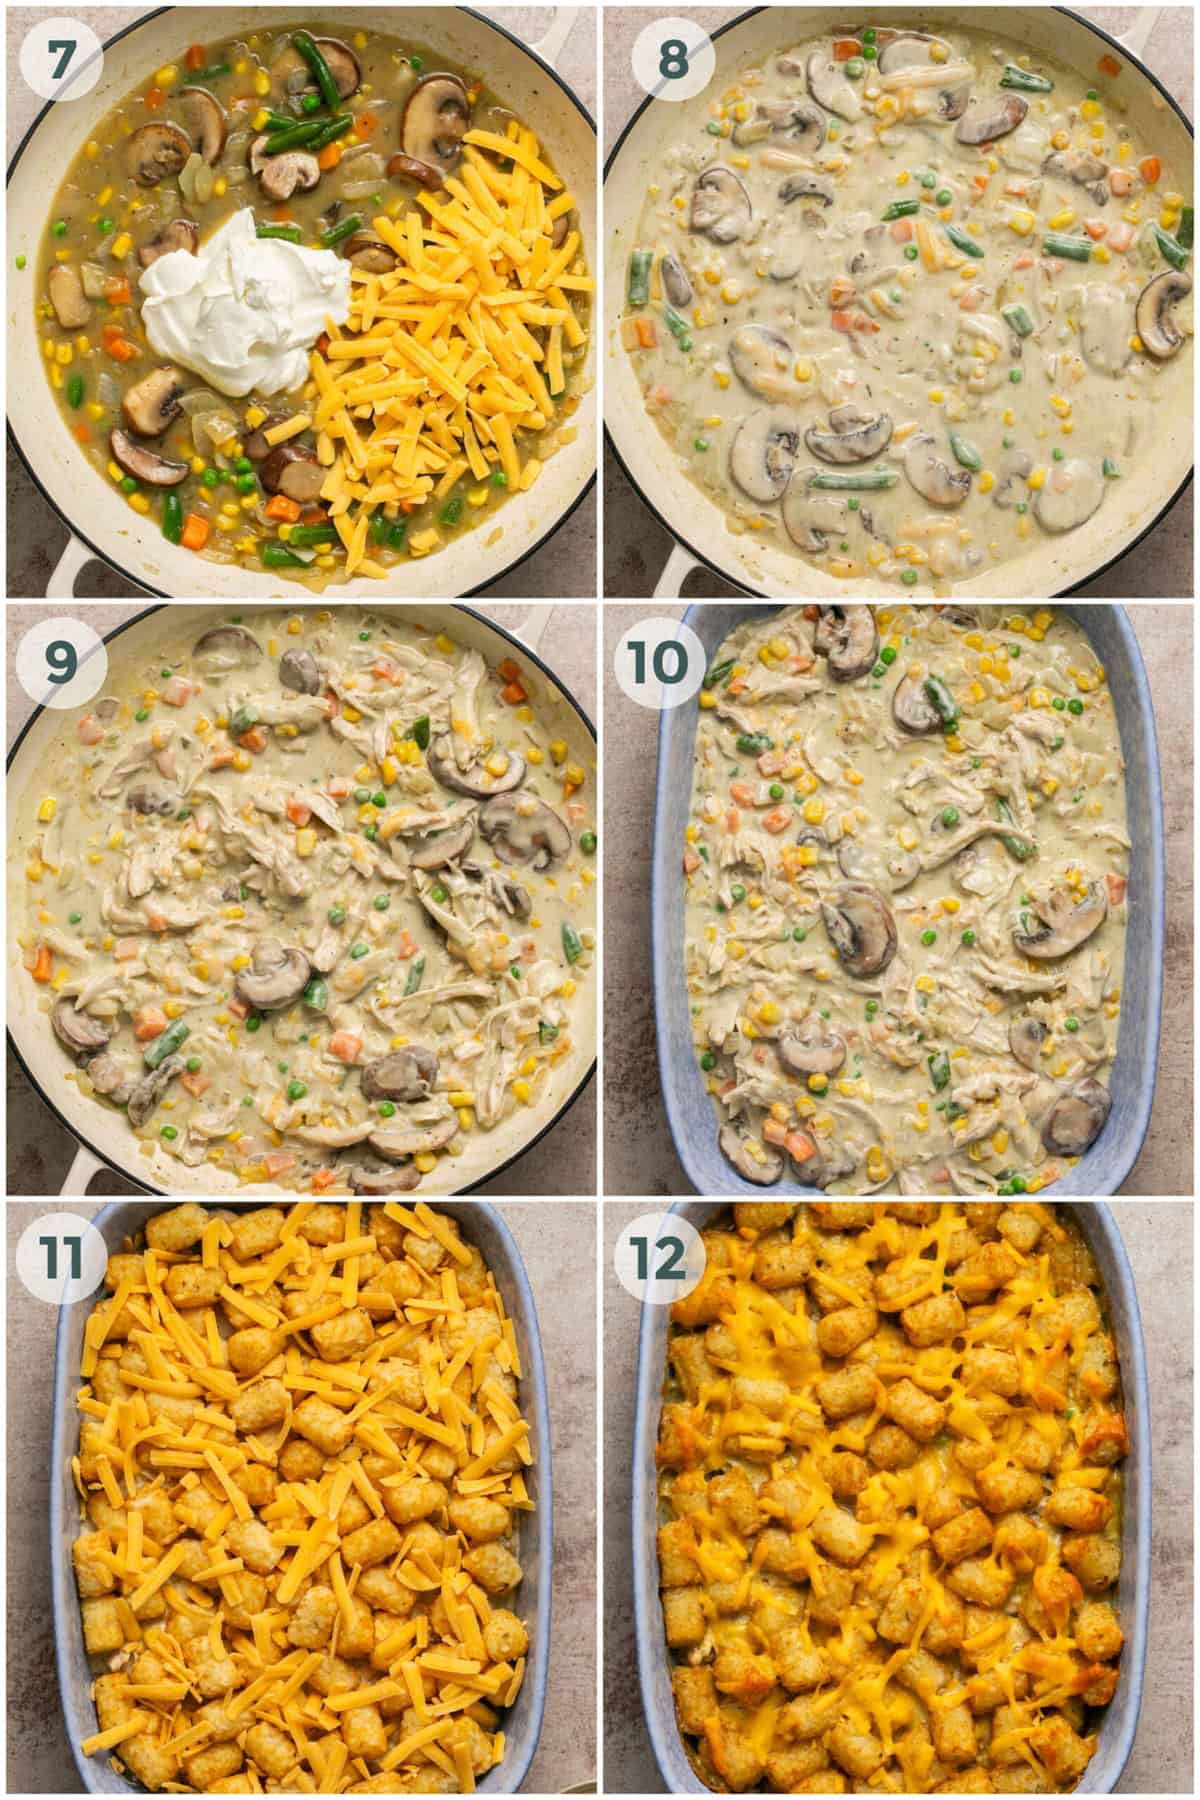 steps 7-12 of preparing tater tot casserole recipe